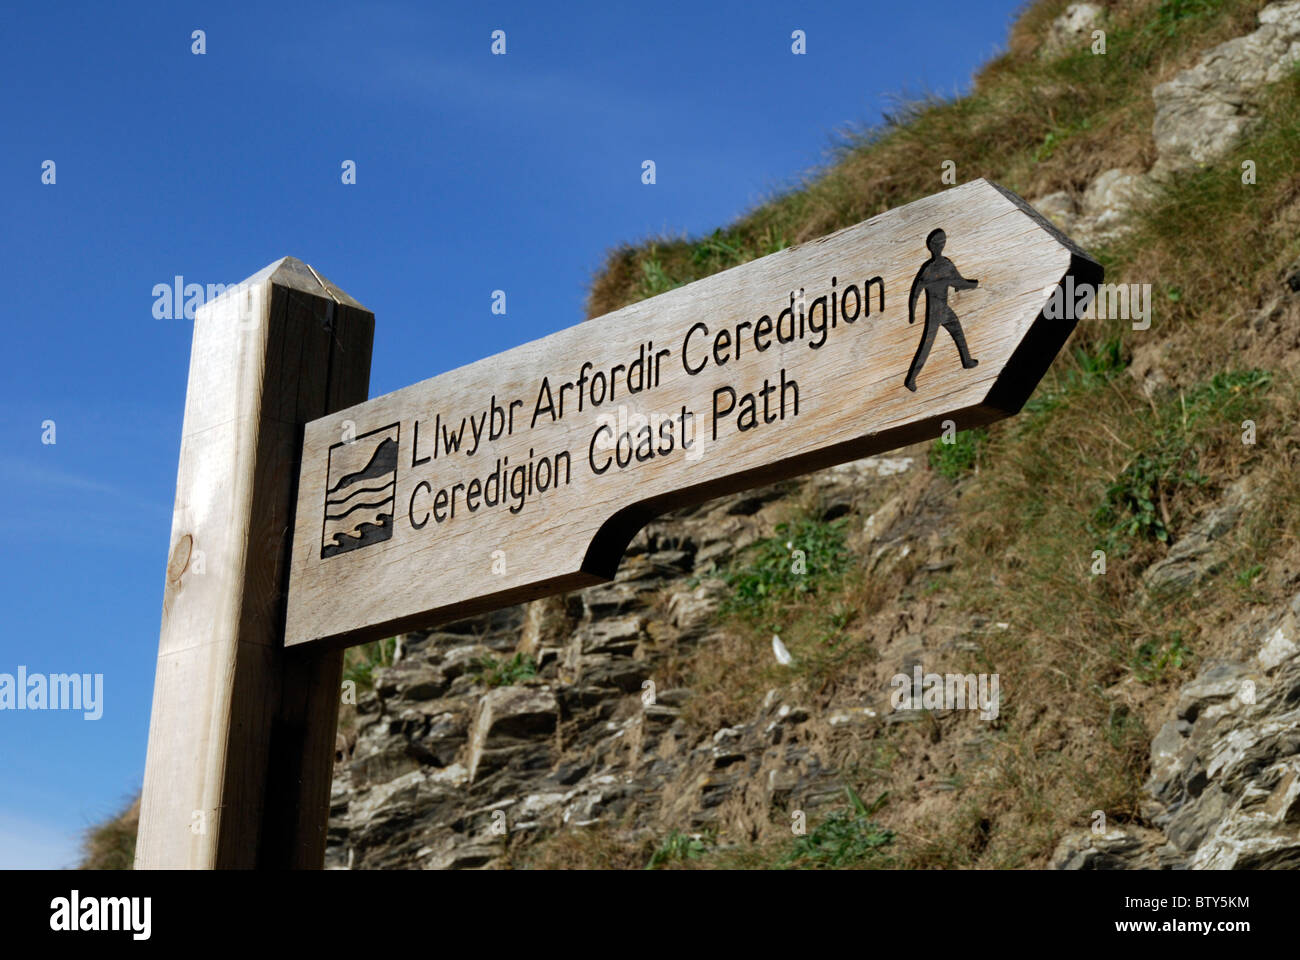 Panneaux indiquant le chemin Côte Ceredigion, LLwybr Arfordir Ceredigion, sur le milieu de la côte galloise, près de Llangranog. Banque D'Images